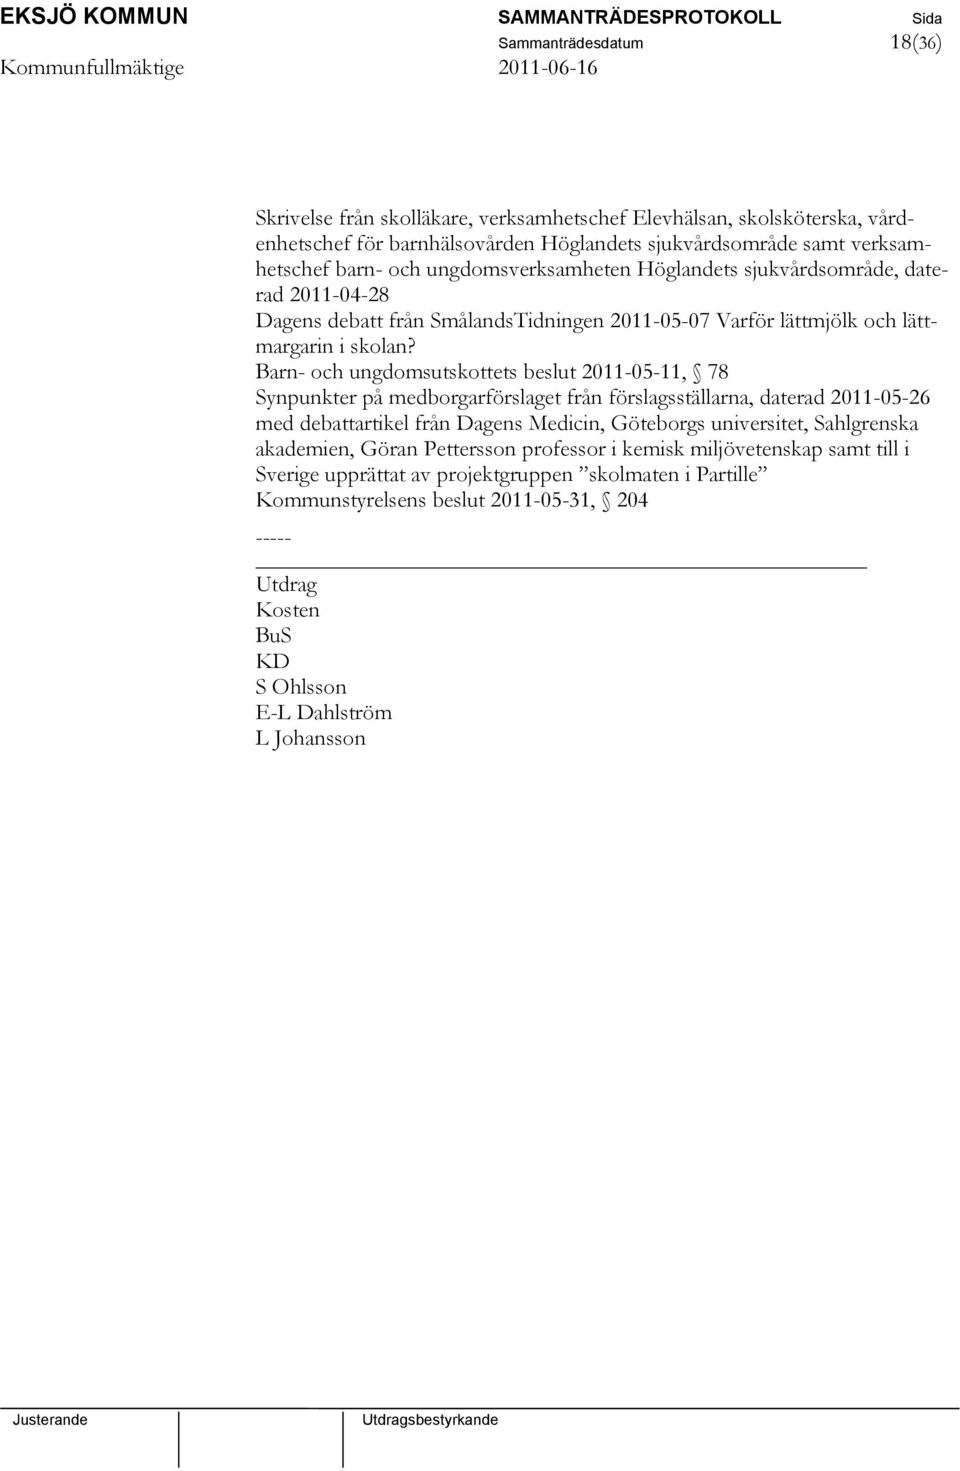 Barn- och ungdomsutskottets beslut 2011-05-11, 78 Synpunkter på medborgarförslaget från förslagsställarna, daterad 2011-05-26 med debattartikel från Dagens Medicin, Göteborgs universitet,